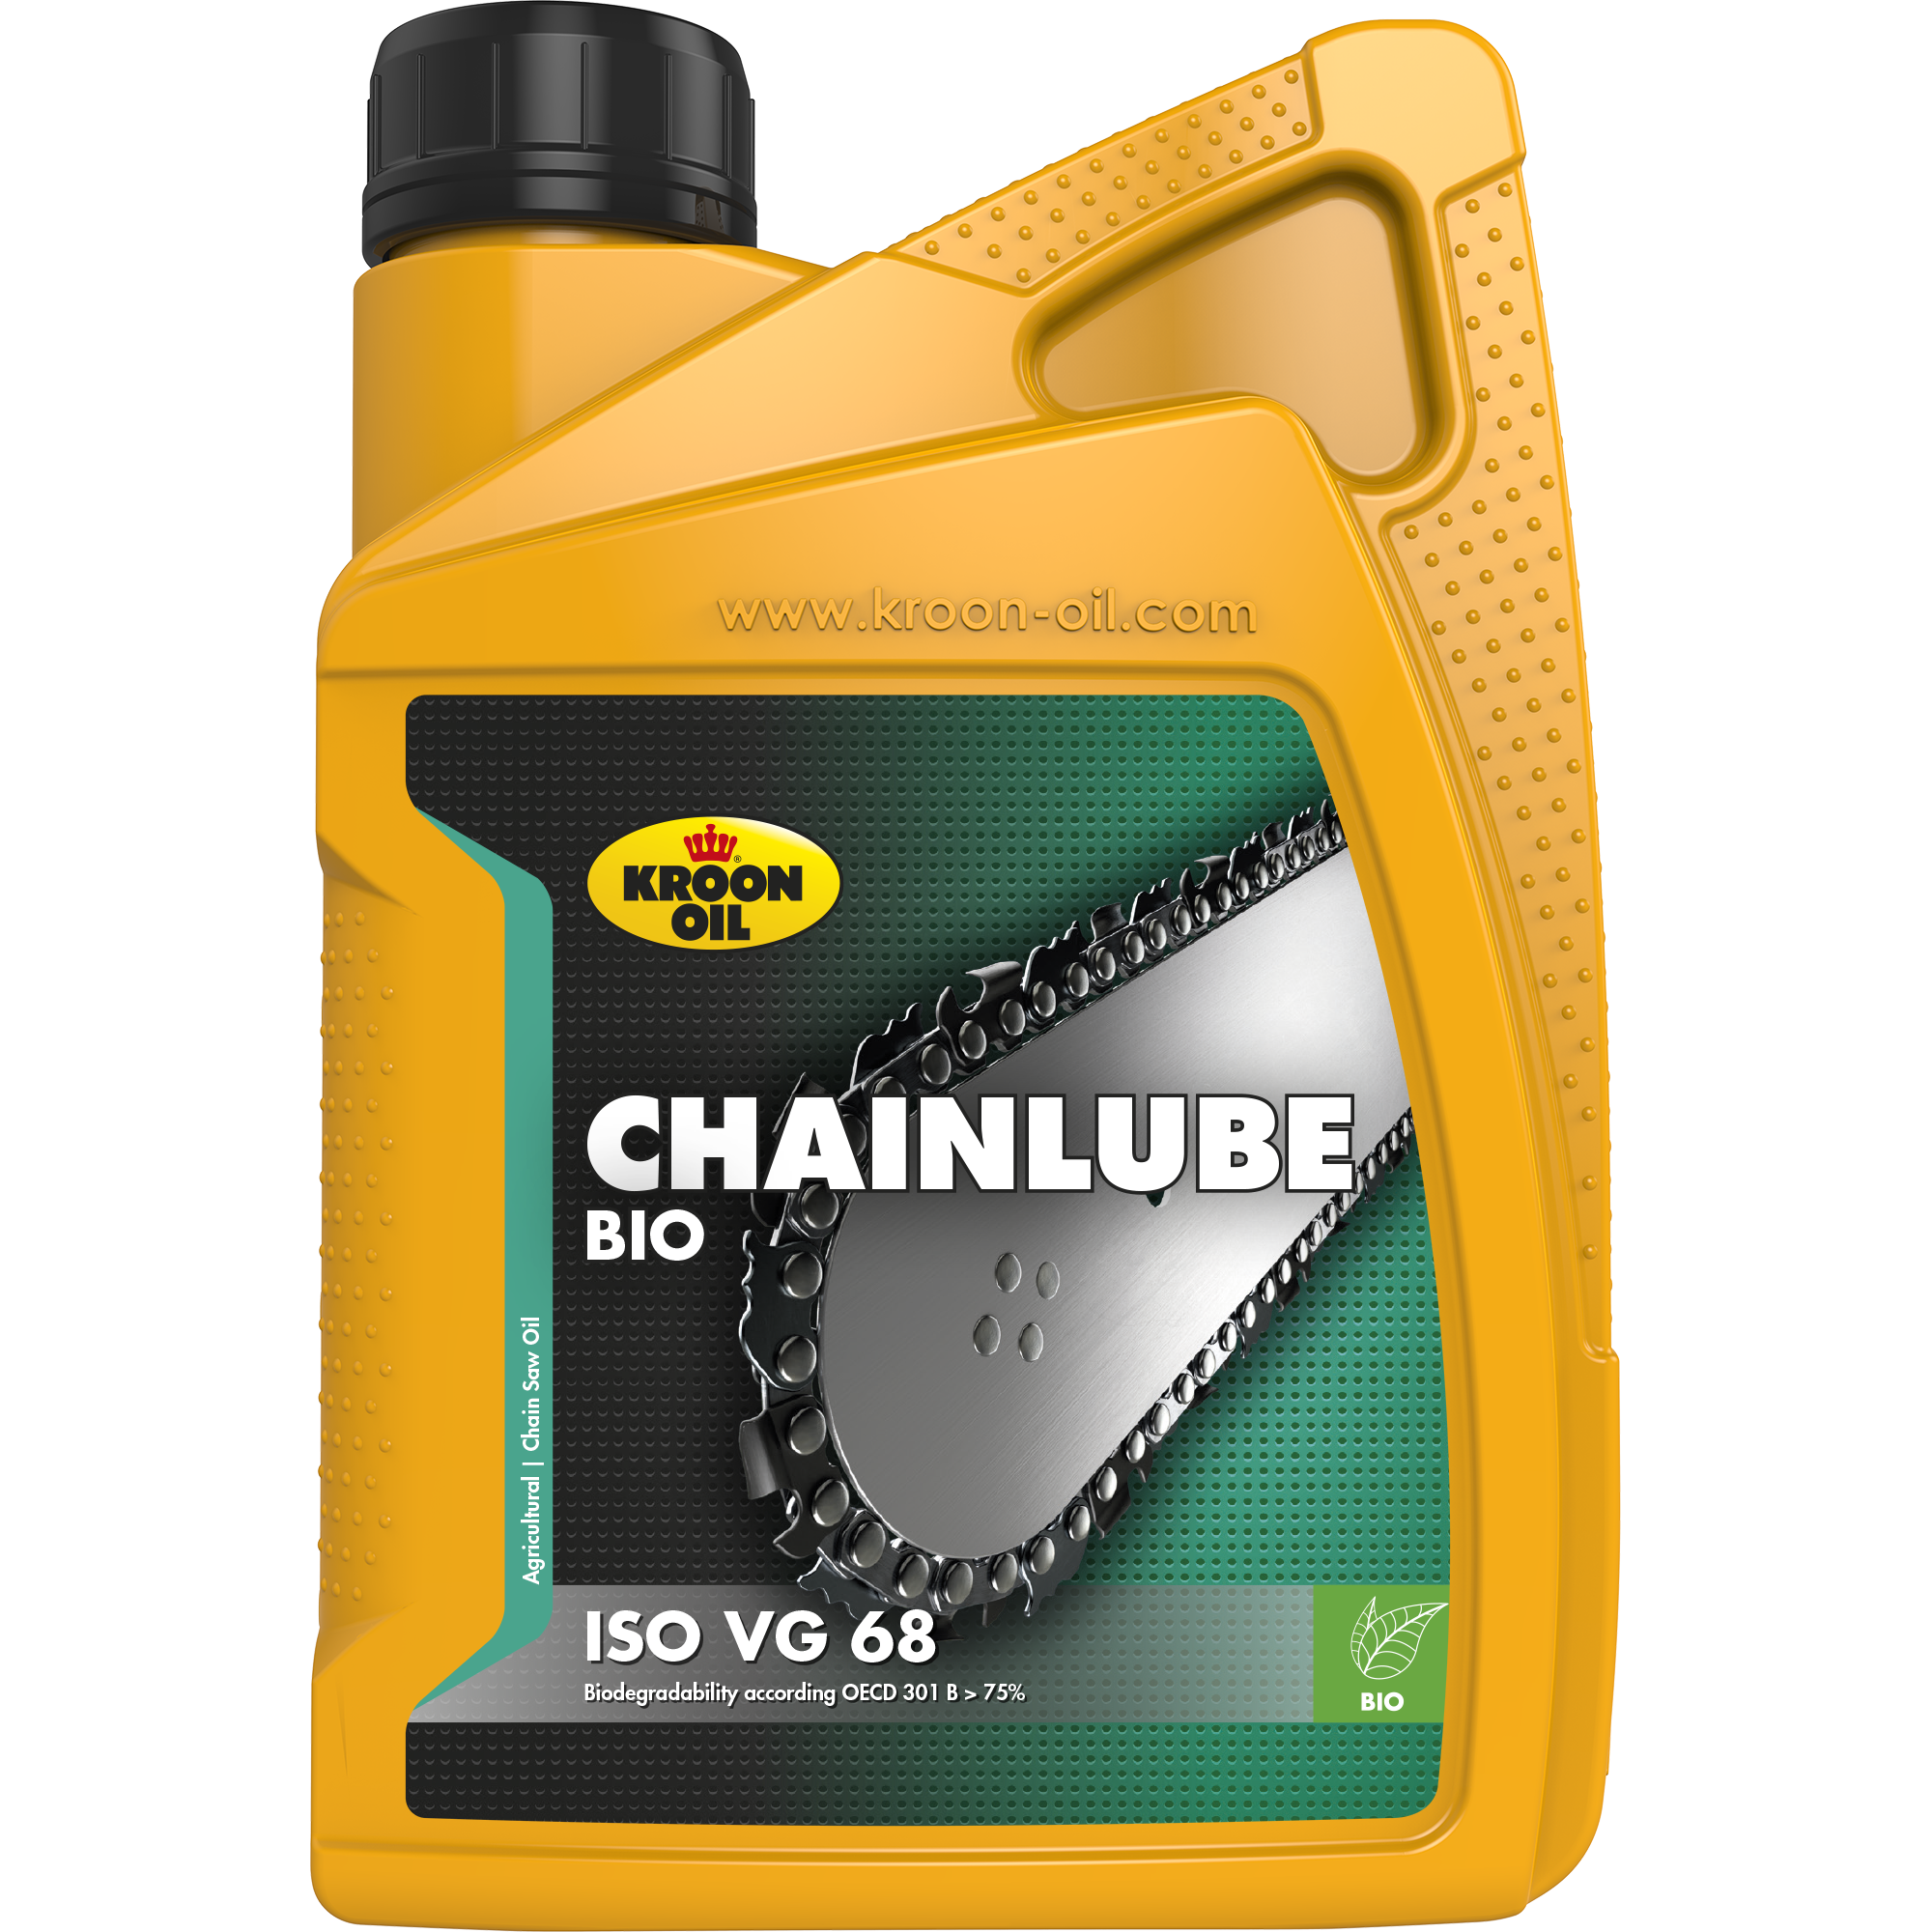 02209-1 Chainlube Bio is een kettingzaagolie, gebaseerd op volledig biologisch afbreekbare plantaardige olie.